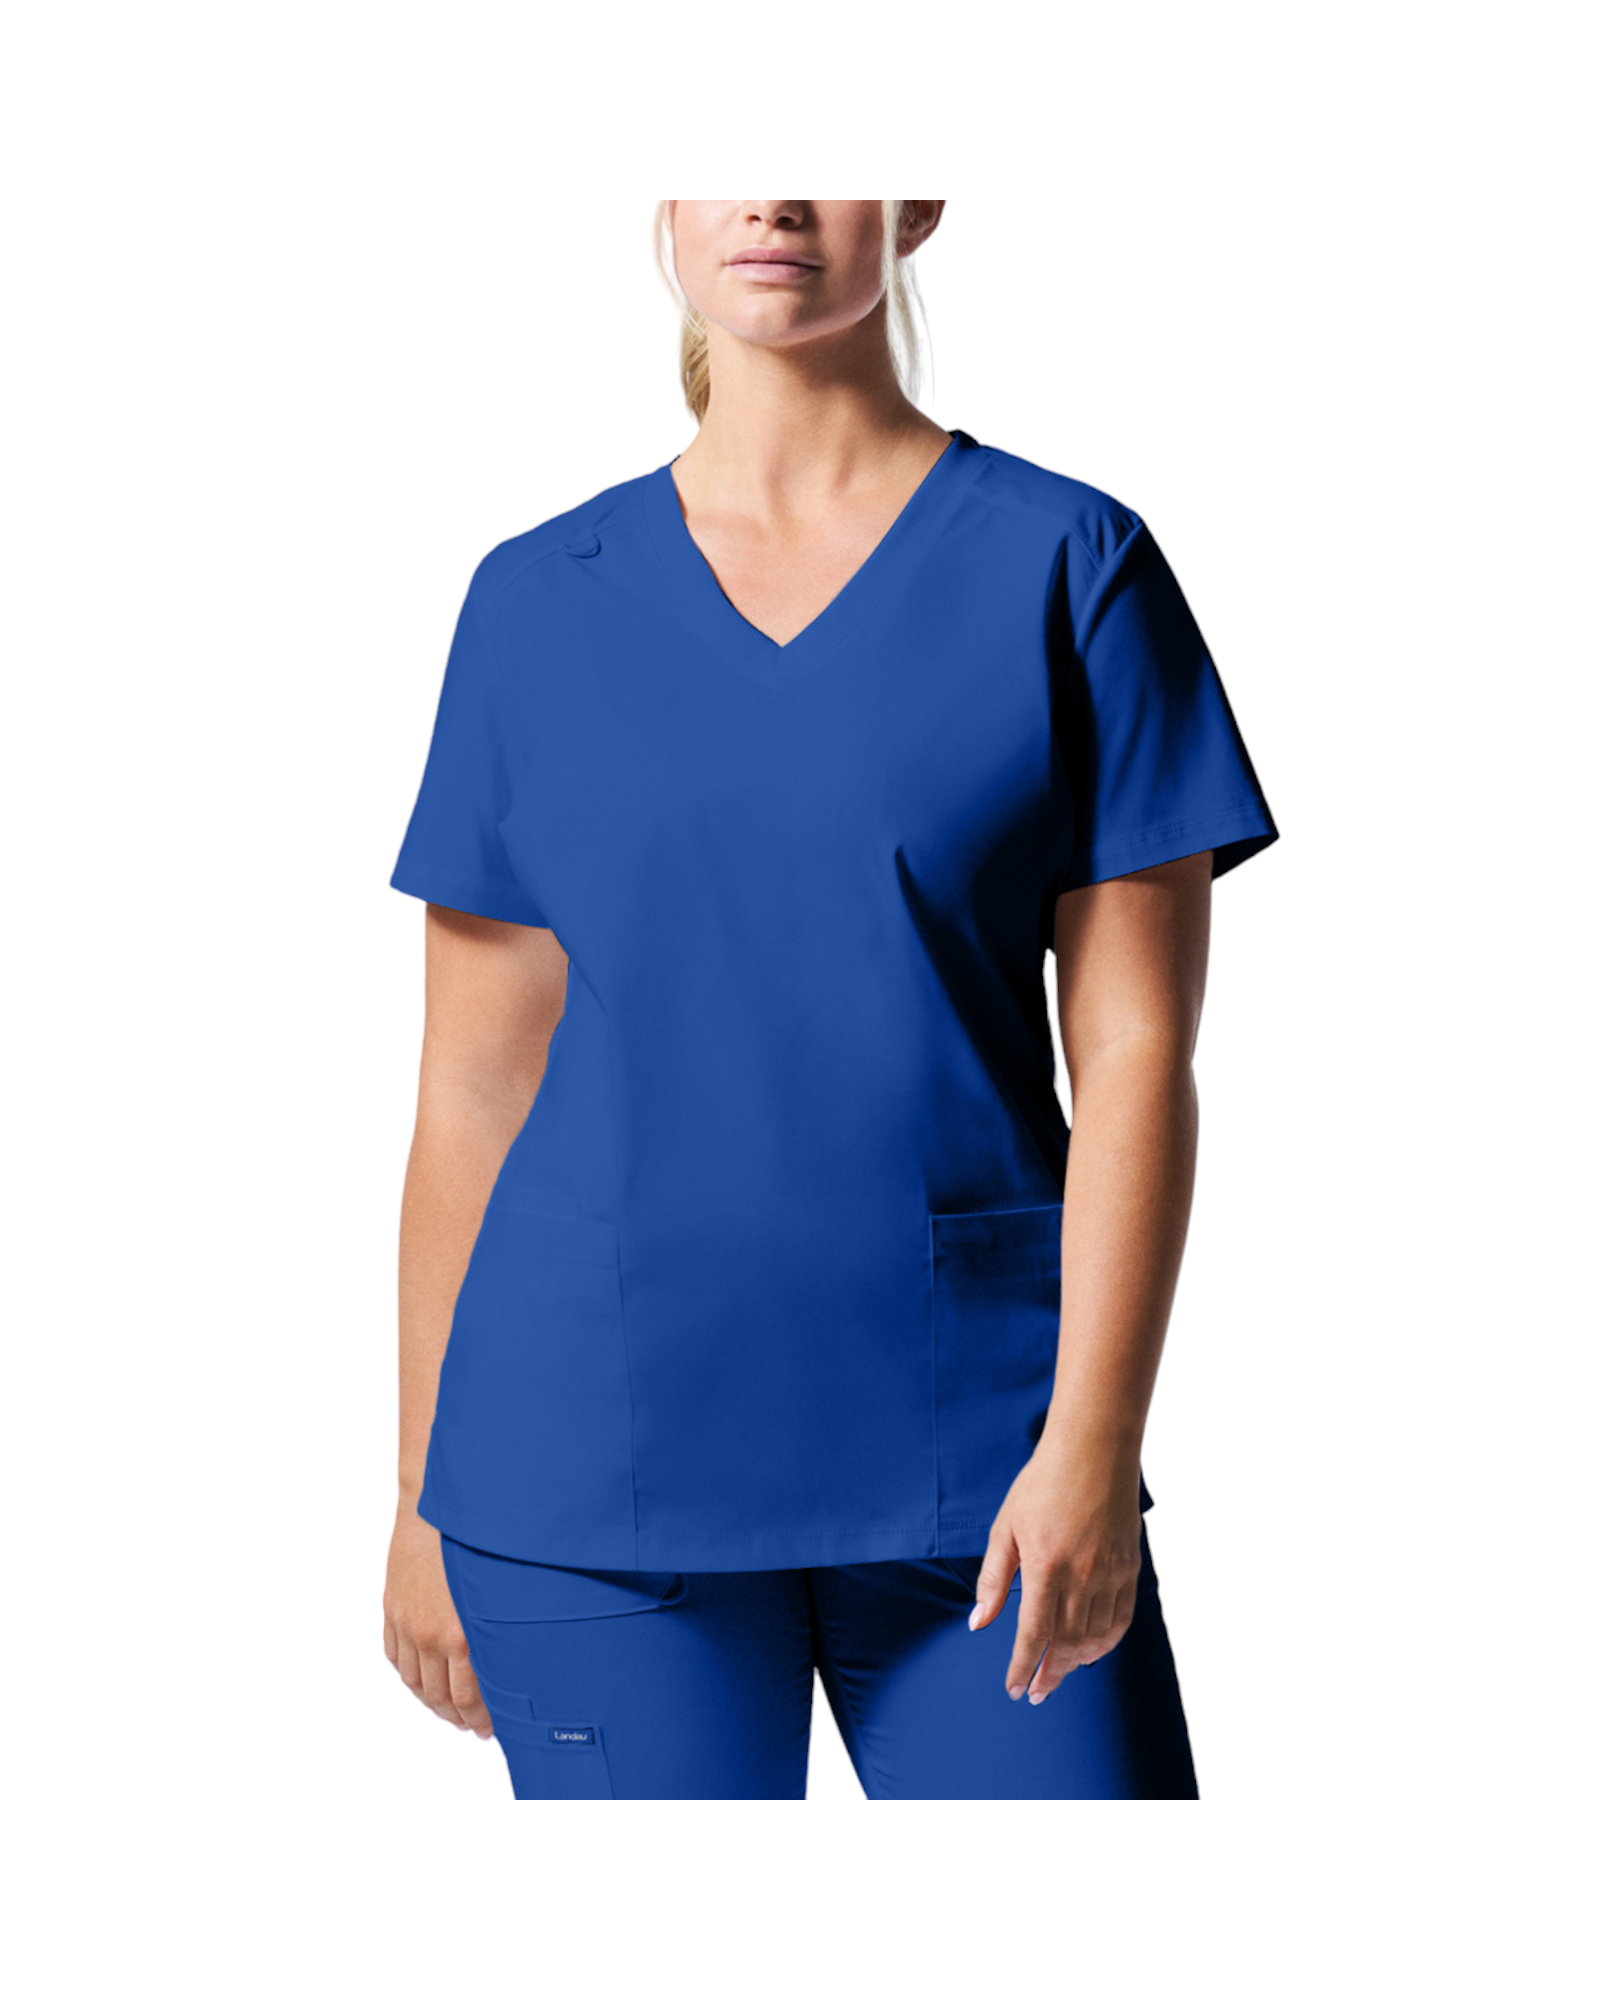 Uniforme de marque landau pour femmes taille plus. Travailleuses du domaine de la santé. LT105-OS couleur Royal, col en V.